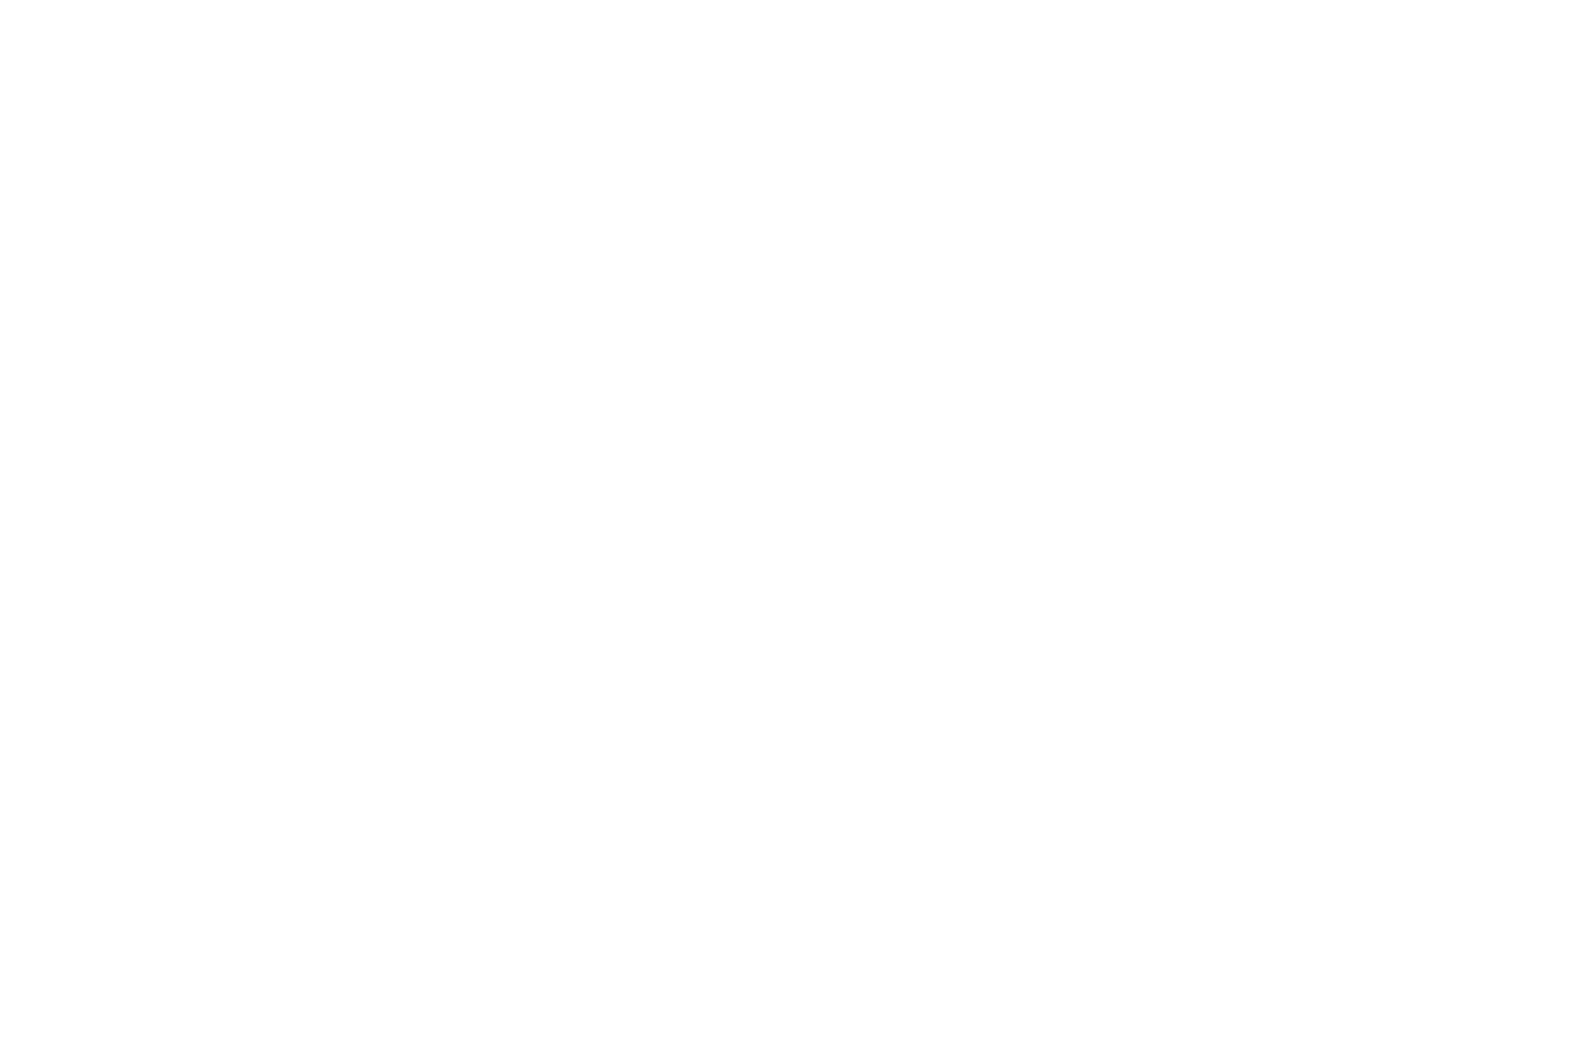 Grupa Kety logo large for dark backgrounds (transparent PNG)